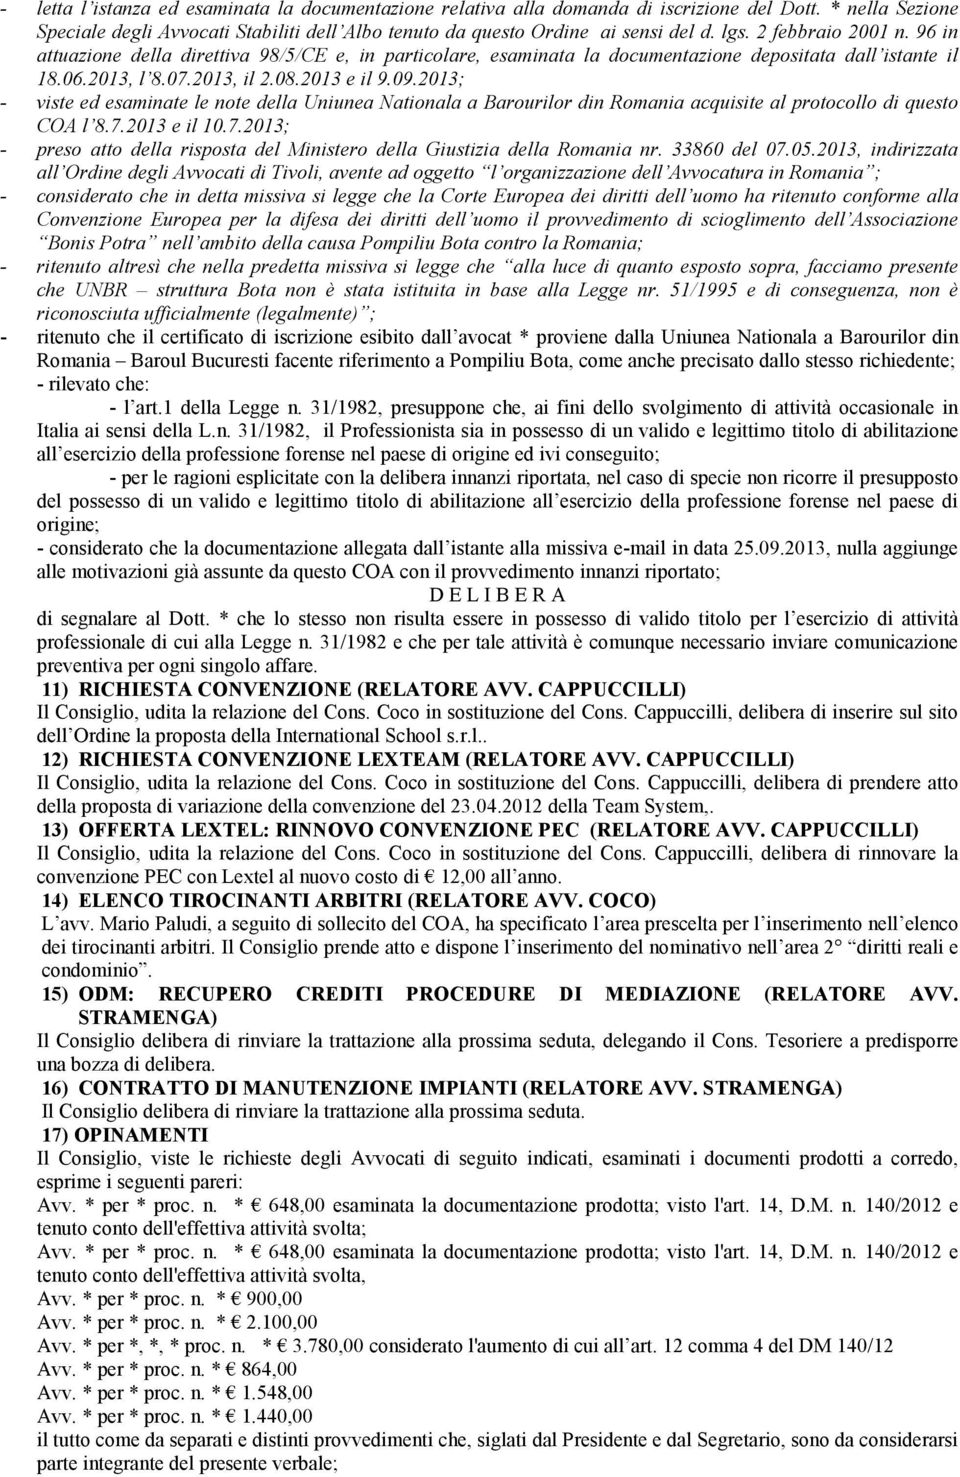 2013; - viste ed esaminate le note della Uniunea Nationala a Barourilor din Romania acquisite al protocollo di questo COA l 8.7.